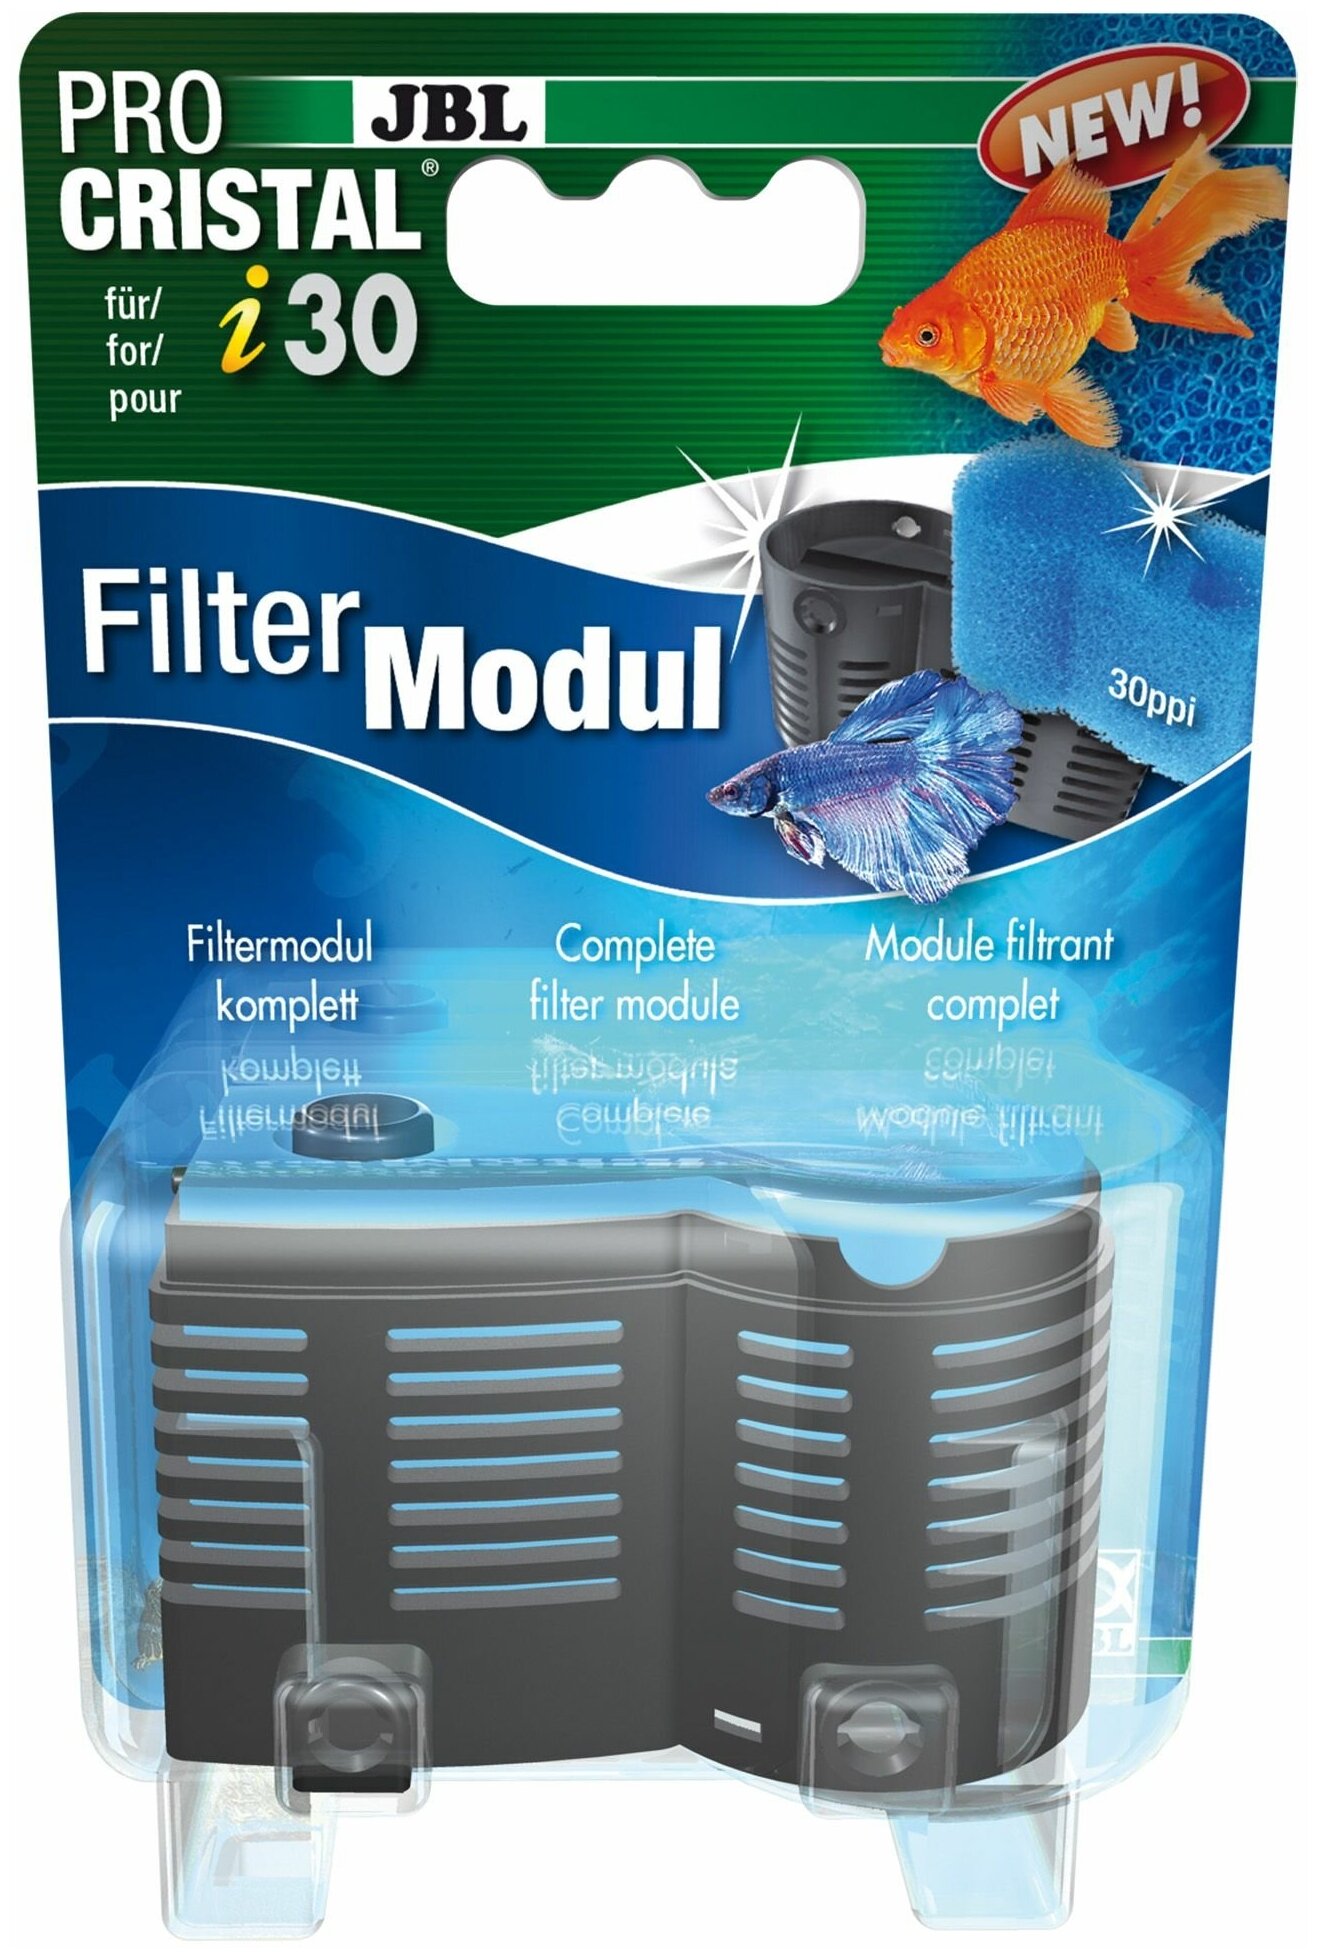 JBL ProCristal i30 FilterModule - Модуль расширения фильтра ProCristal i30 - фотография № 1